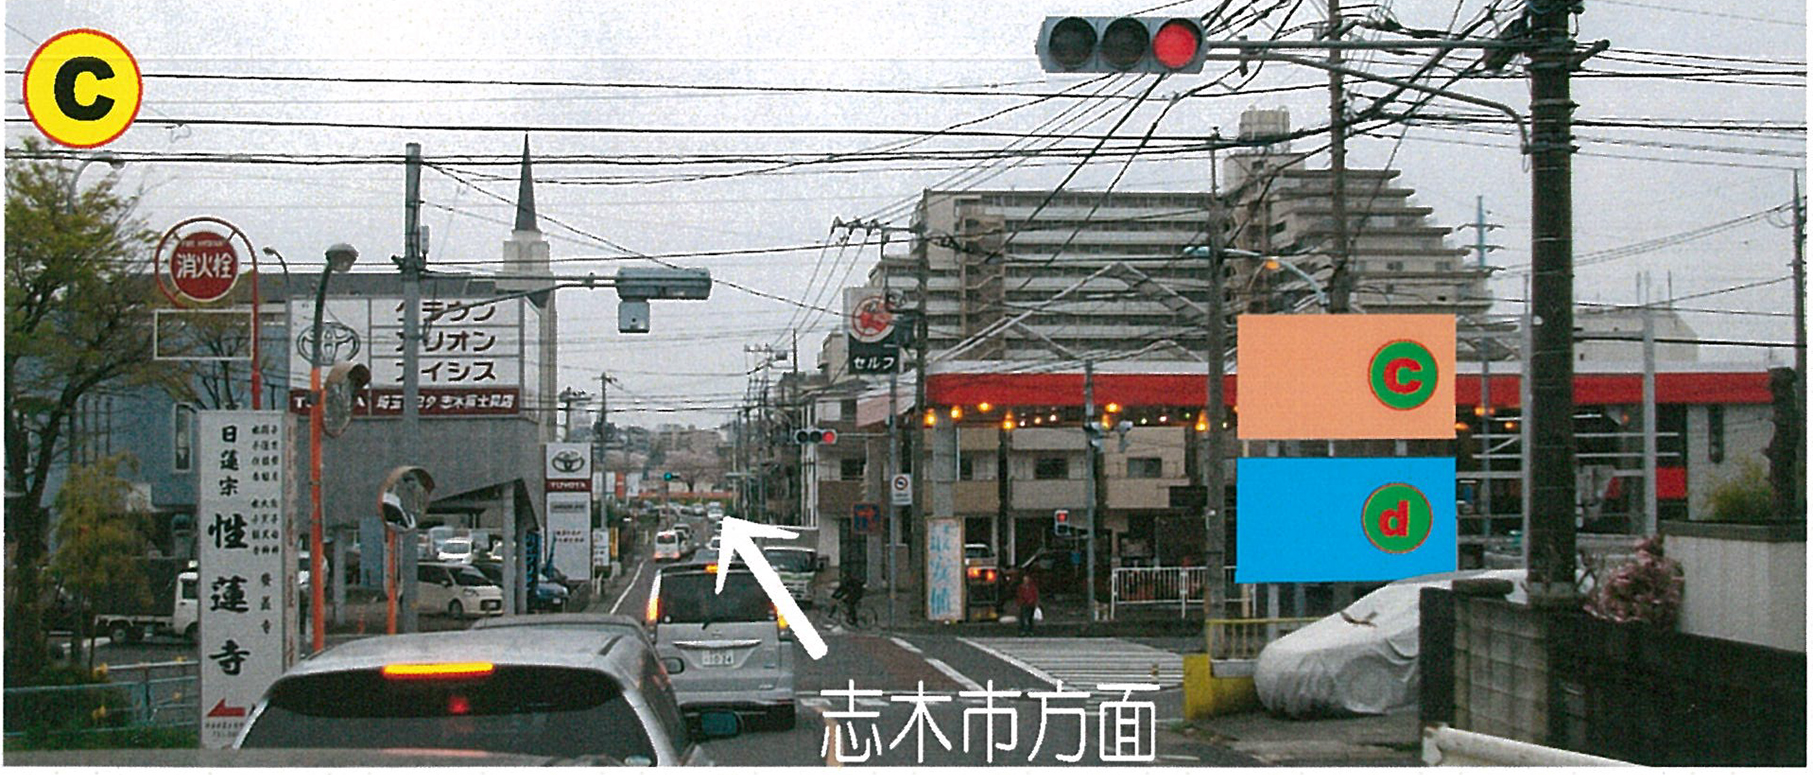 富士見市・R463・254ずほ台駅東口入口への交差点